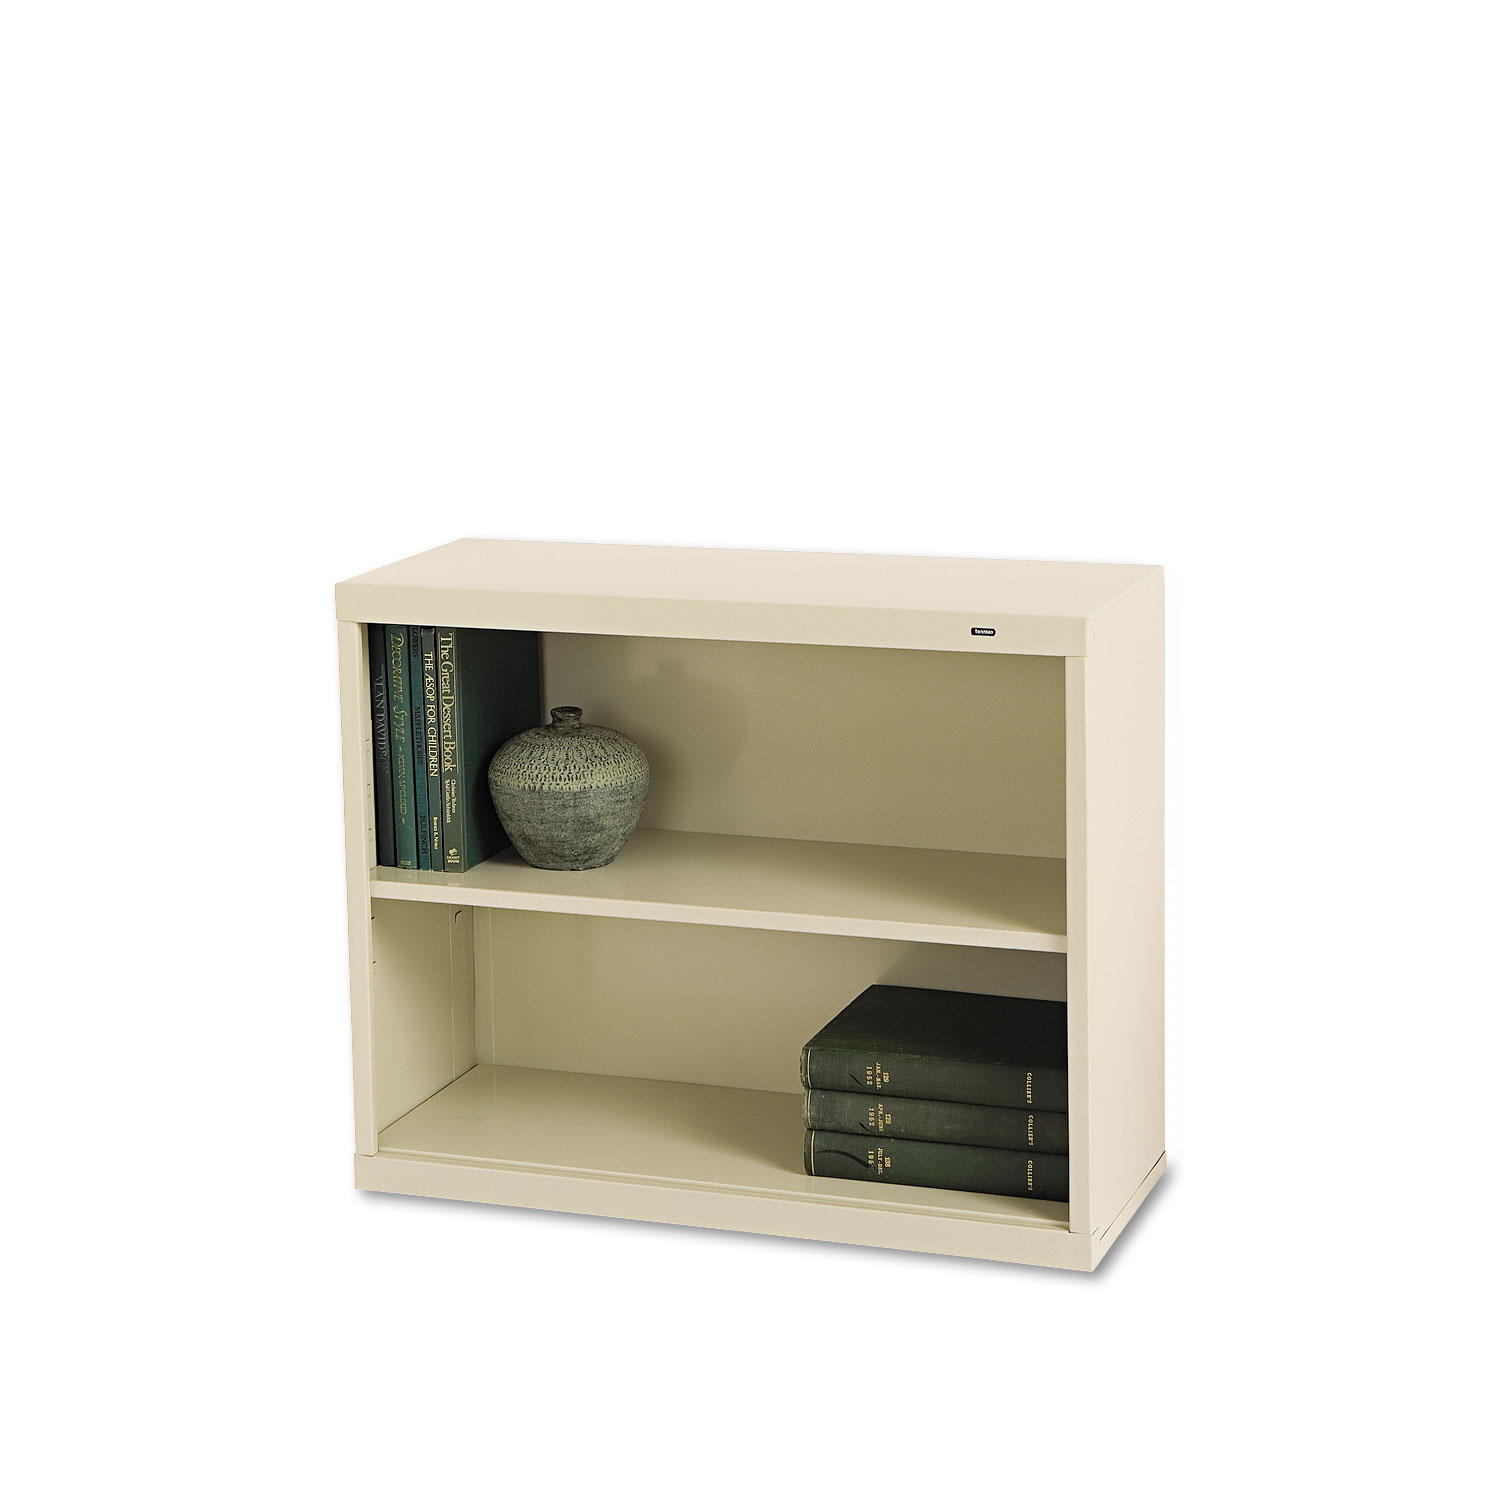  Tennsco B-30PY Metal Bookcase, Two-Shelf, 34-1/2w x 13-1/2d x 28h, Putty (TNNB30PY) 